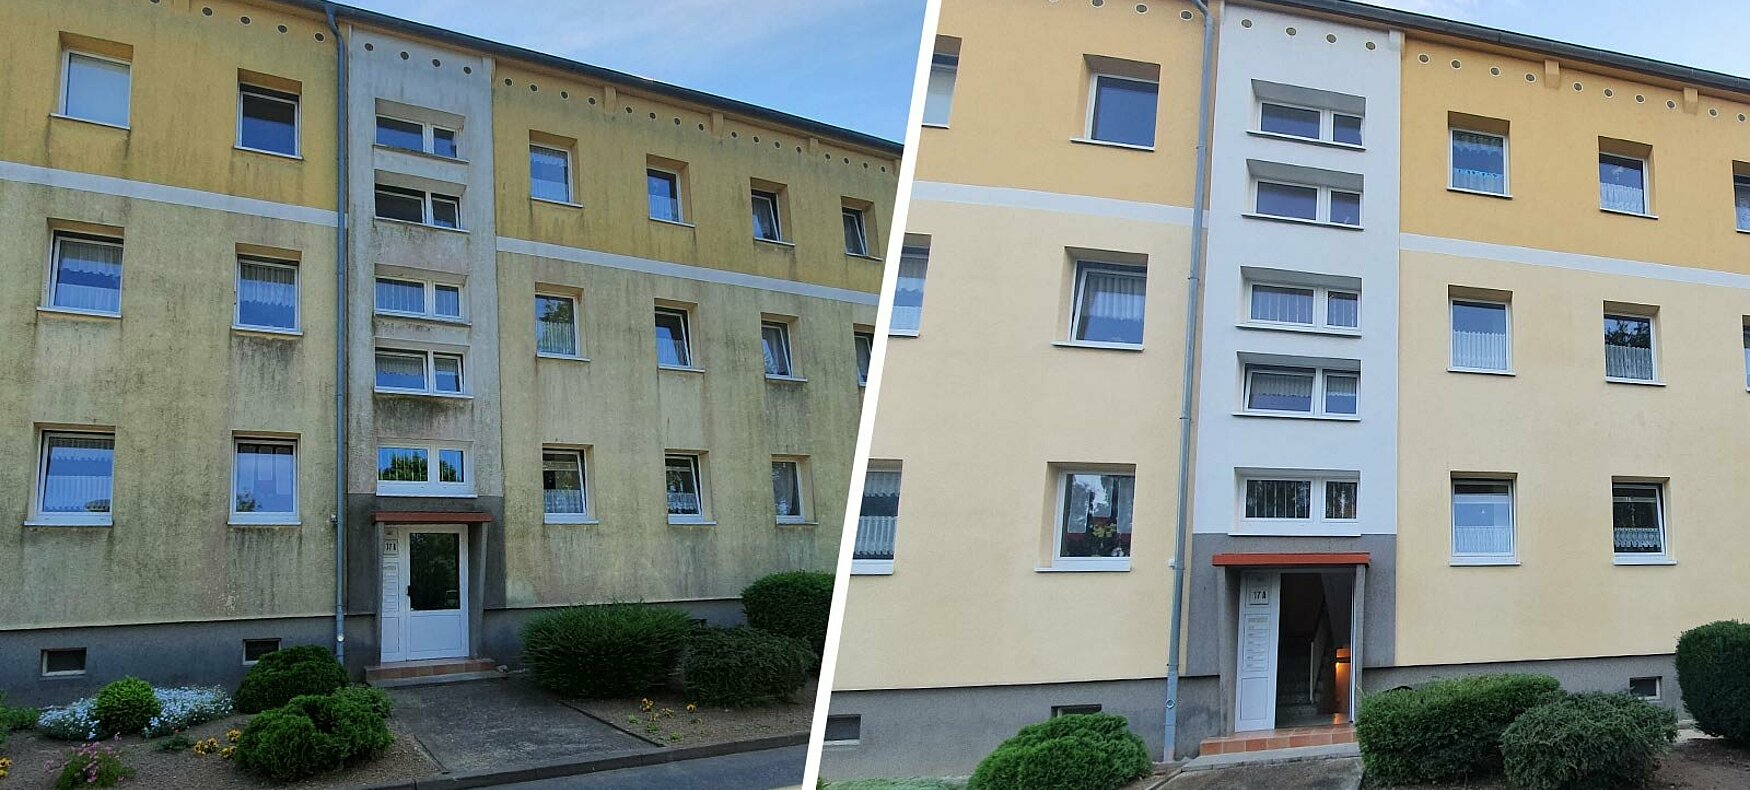 Fassadenreinigung Rostock: Jetzt Angebot einholen und Hauswand reinigen lassen.